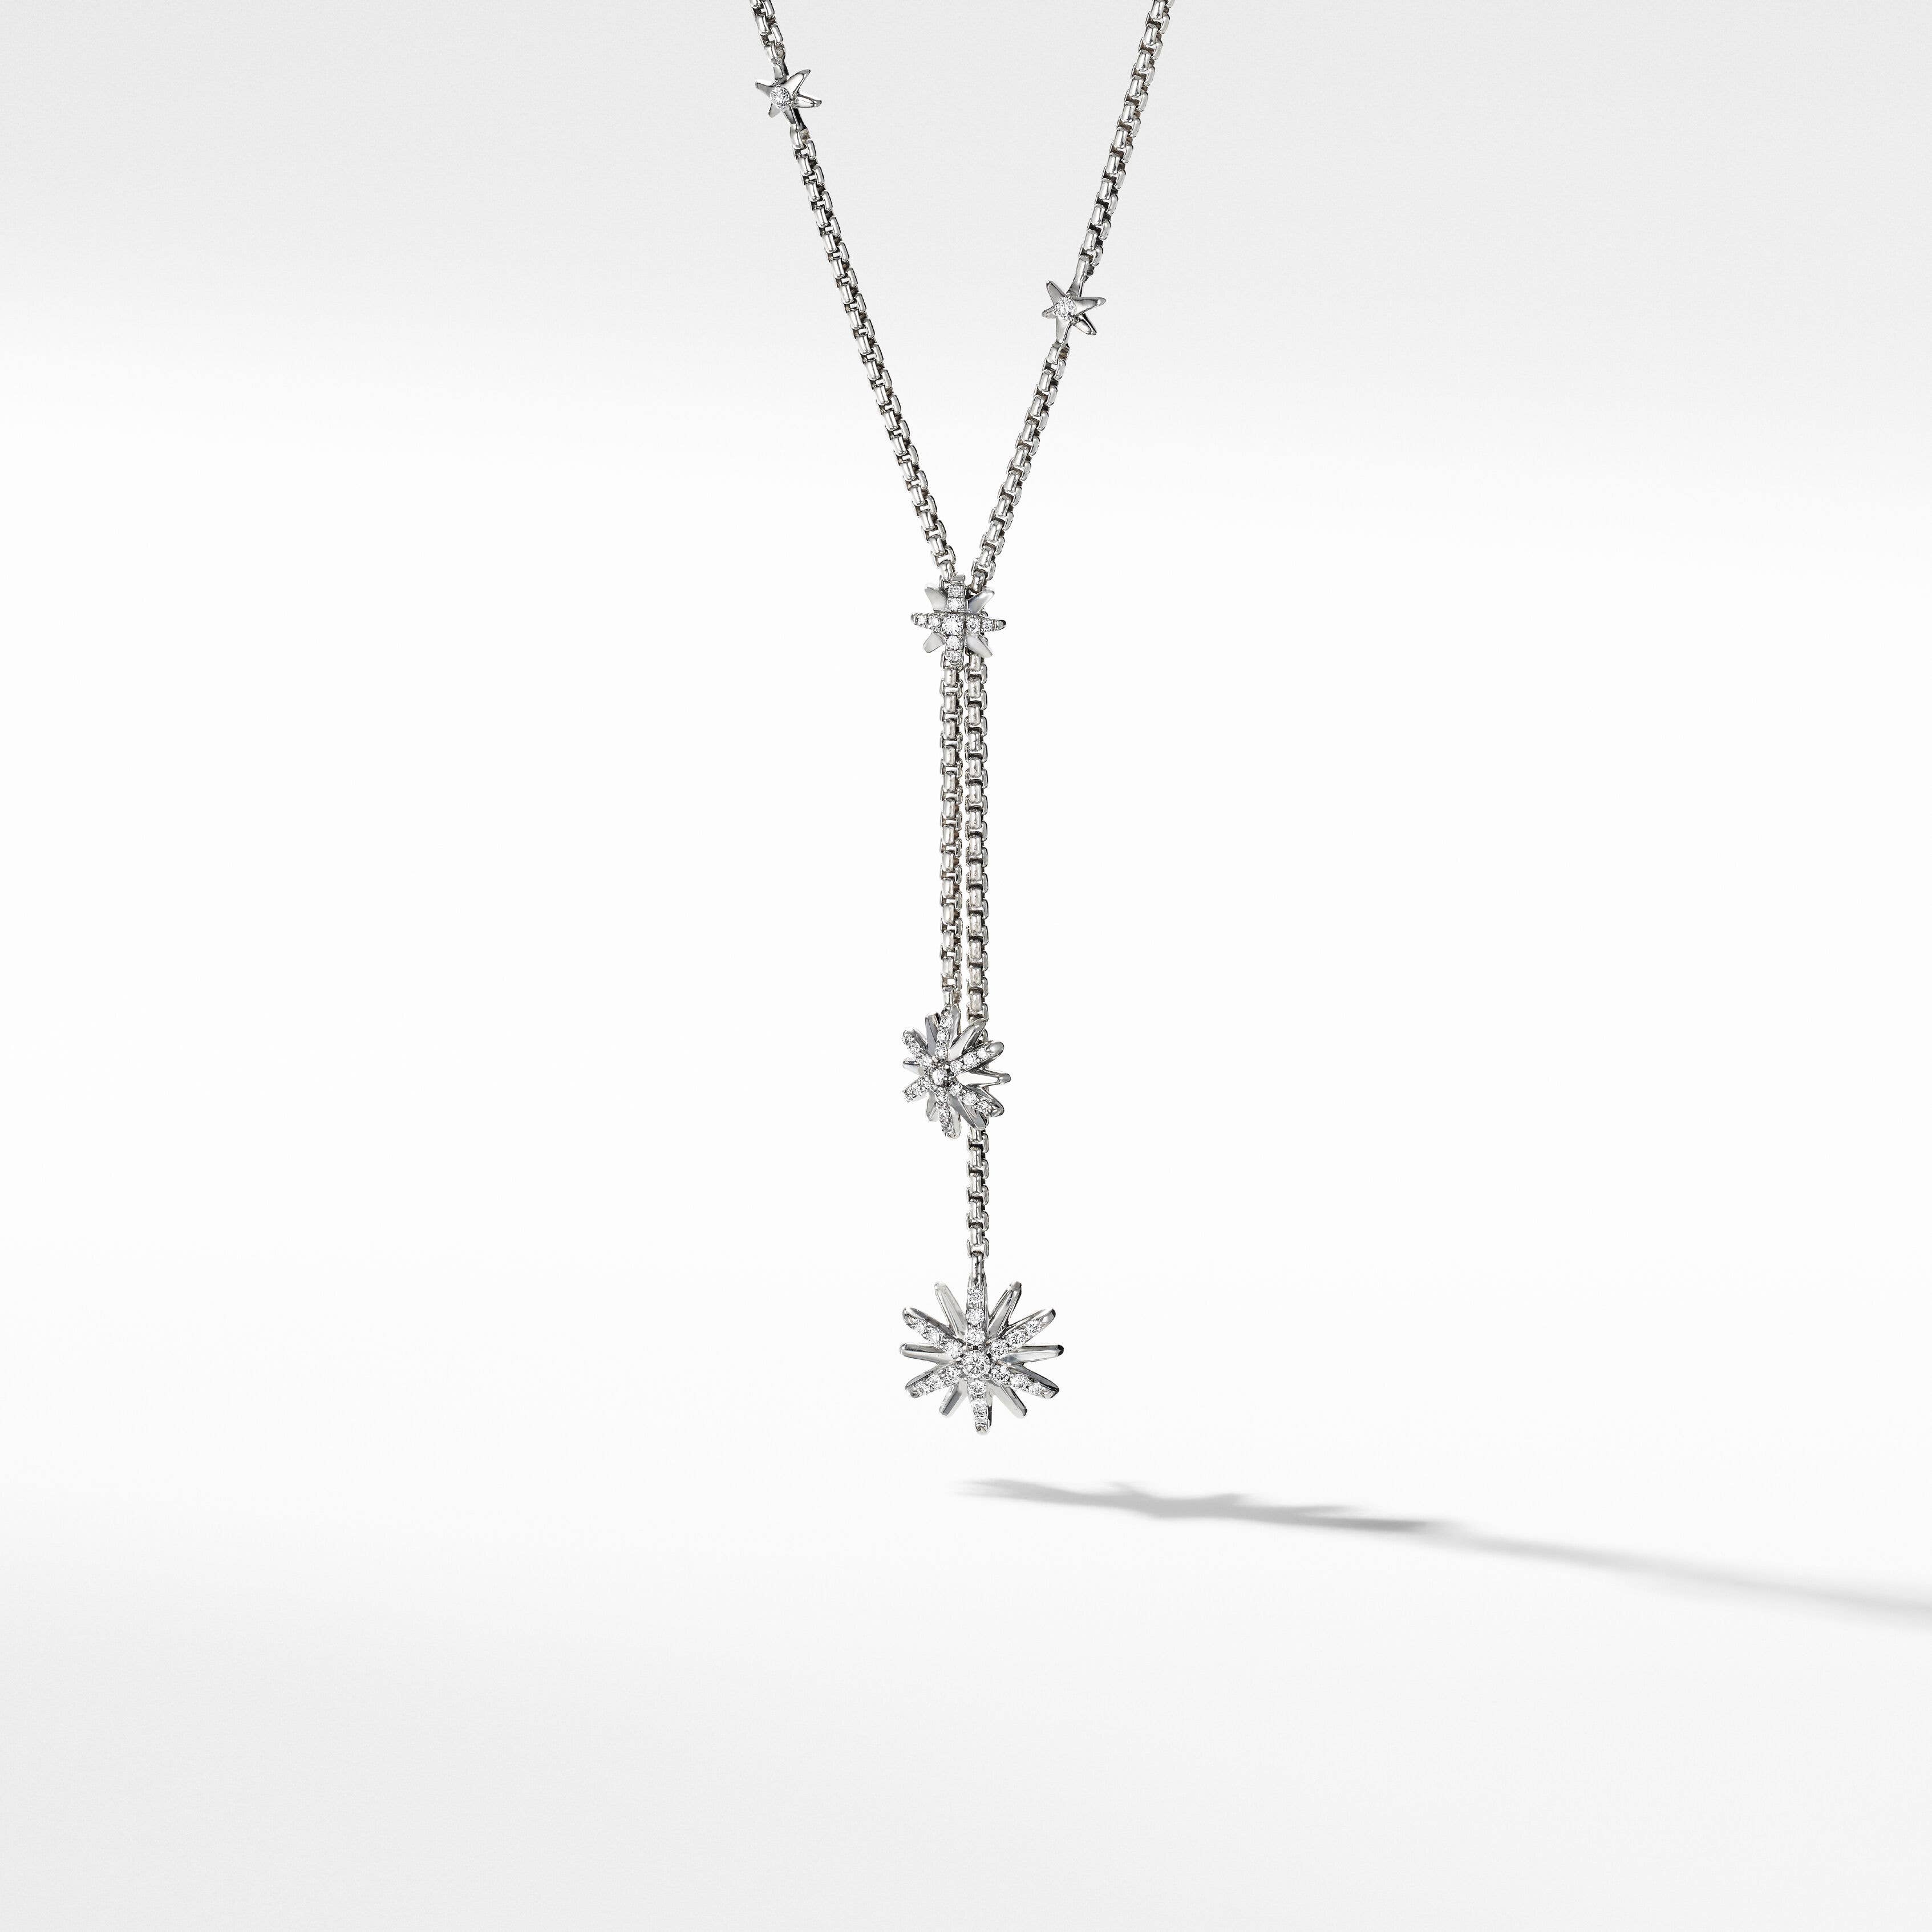 Starburst Y Necklace with Pavé Diamonds